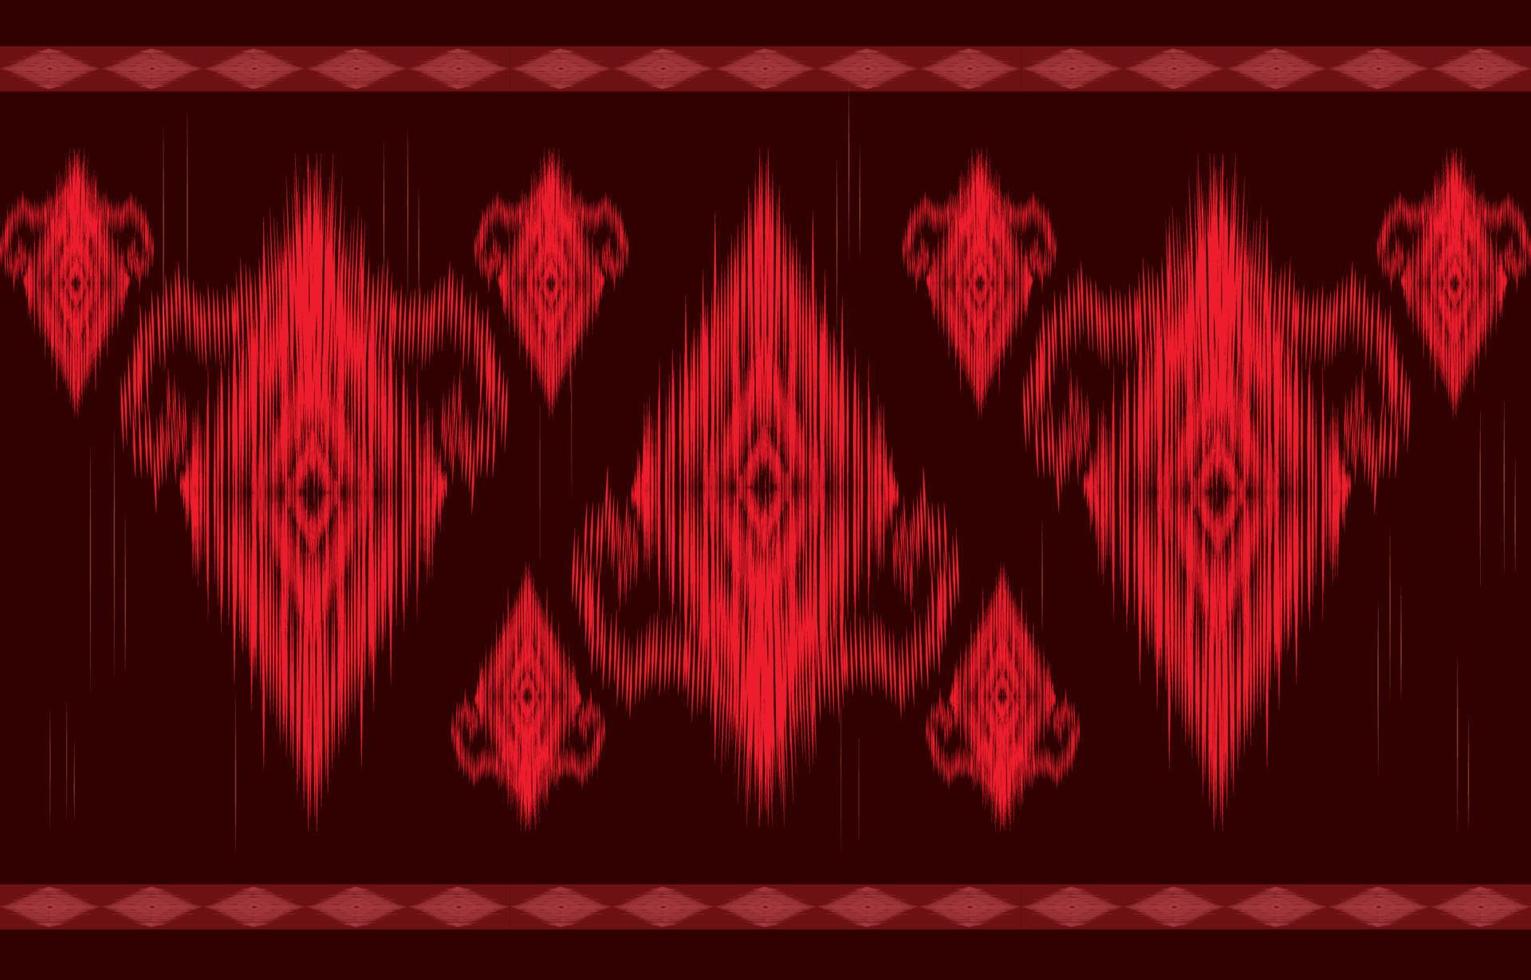 rode ikat naadloze patroon geometrische etnische Oosterse traditionele borduurwerk style.design voor achtergrond,tapijt,mat,behang,kleding,inwikkeling,batik,stof,vectorillustratie. vector